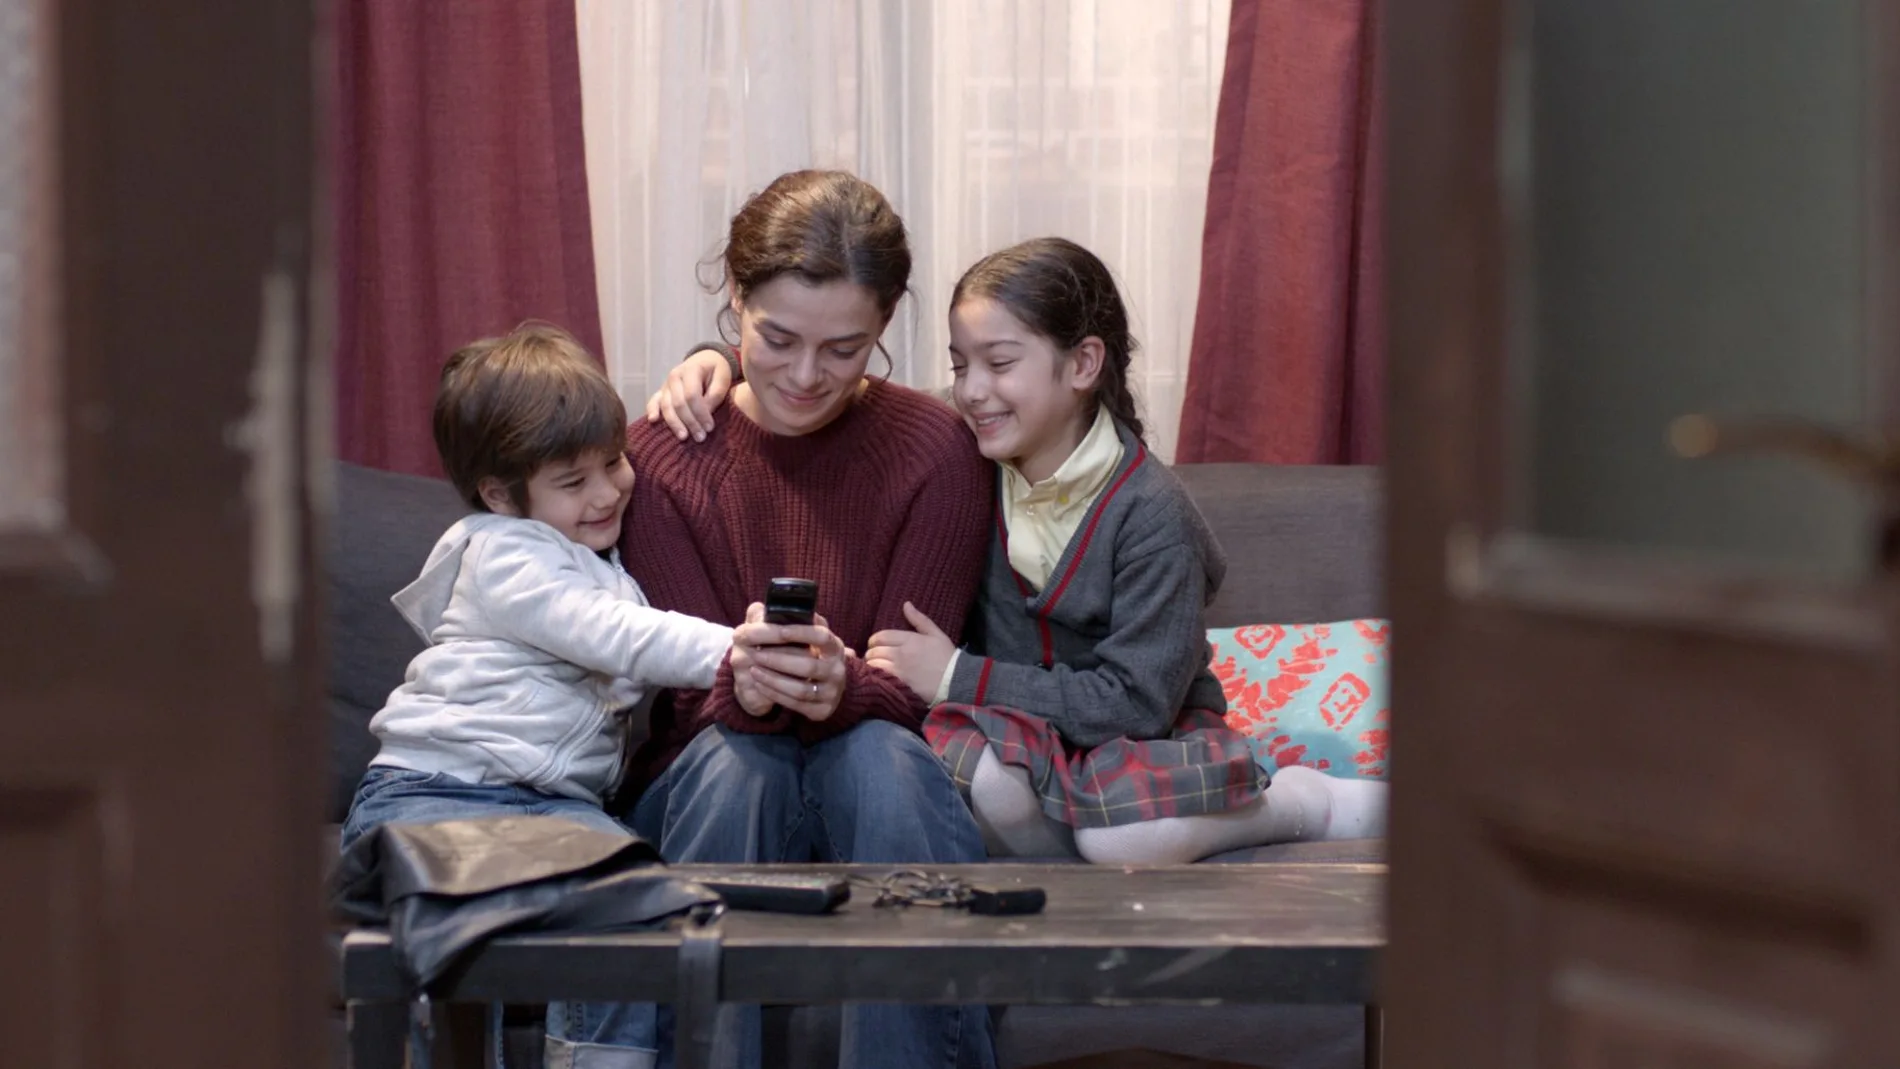 Bahar (Ozge Ozpirincci) recupera el móvil de su marido y muestra a sus hijos las fotos guardadas